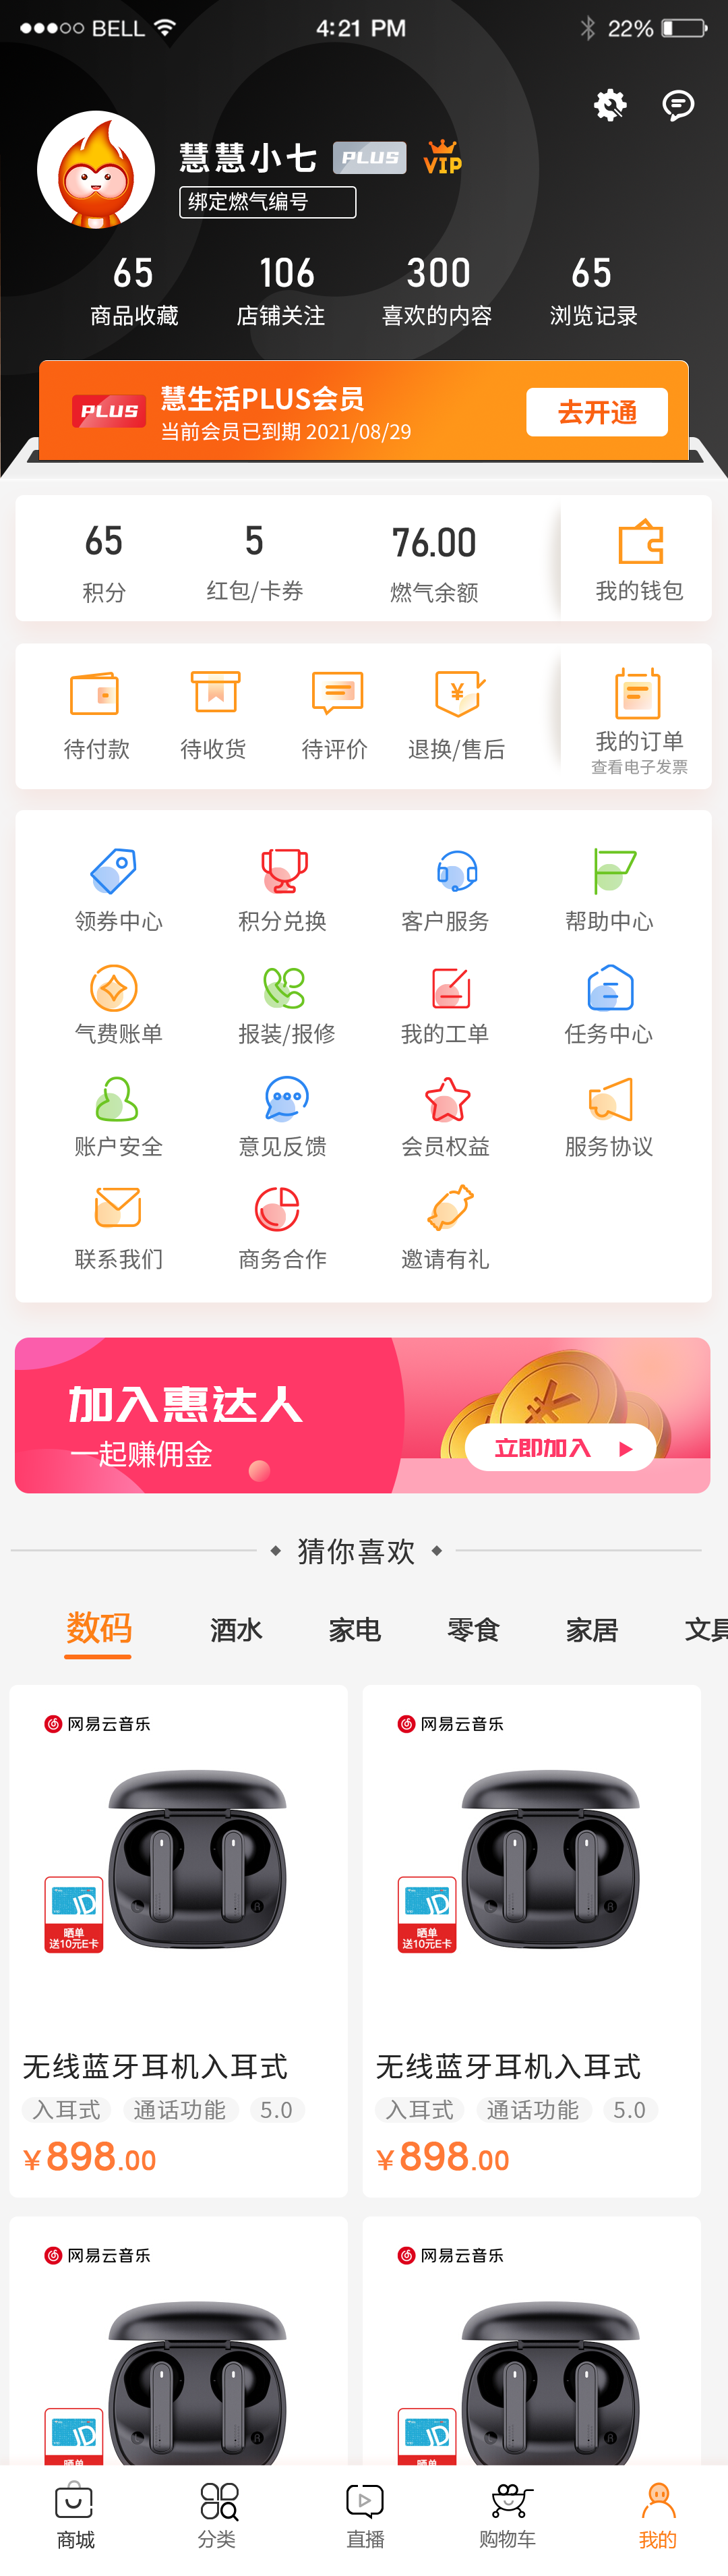 中国燃气-慧生活 UI设计(图3)